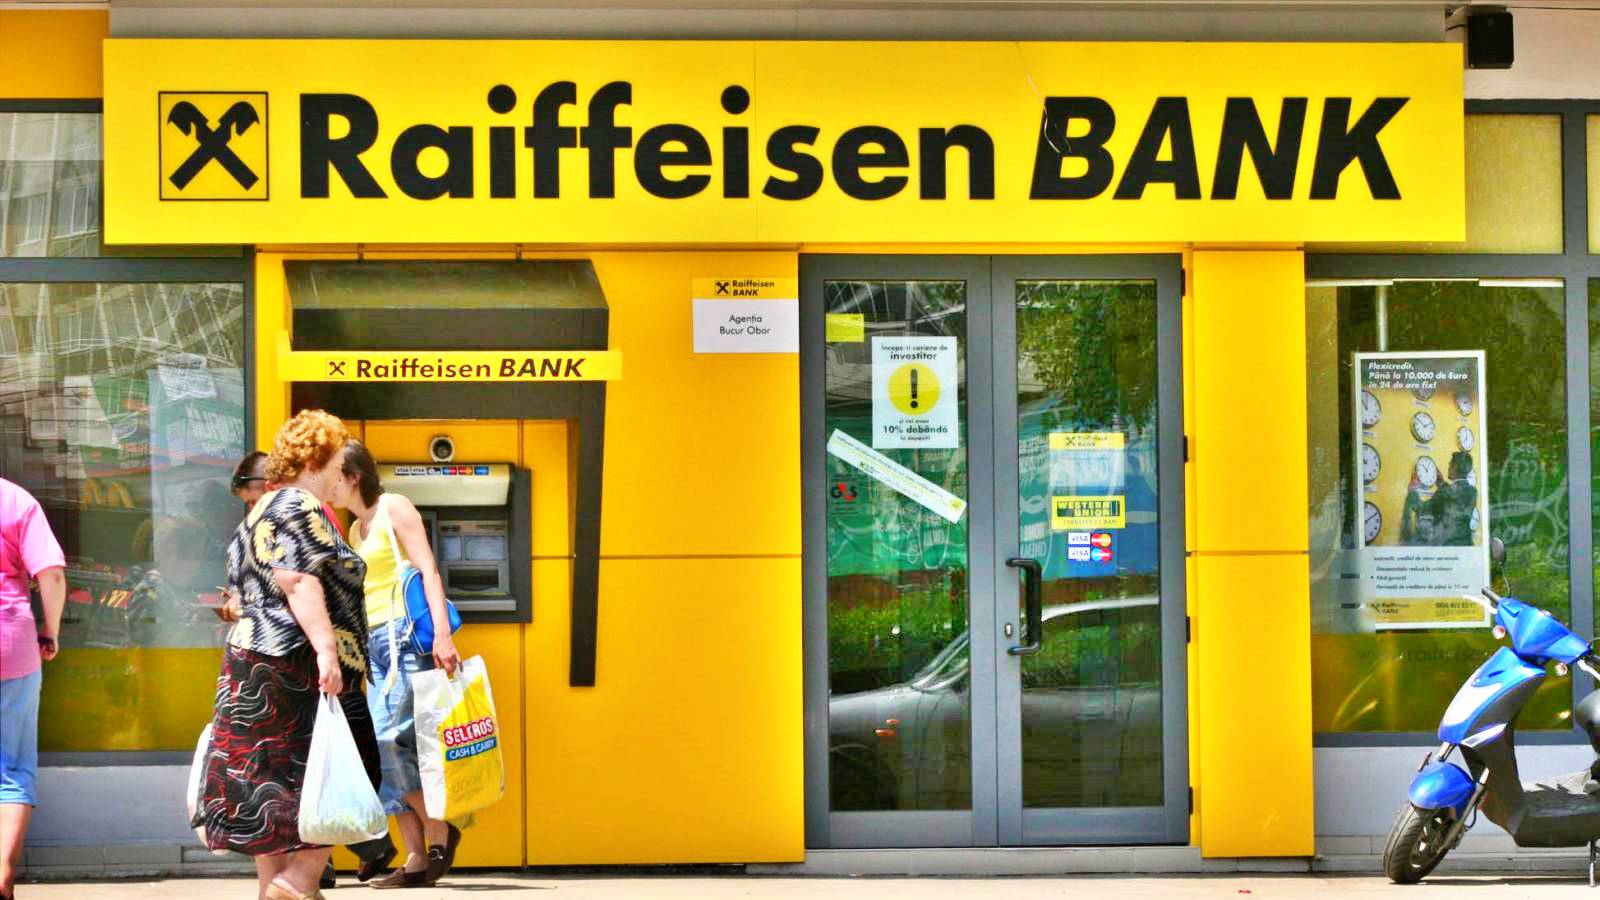 Die LAST-MINUTE-Benachrichtigung der Raiffeisen Bank richtet sich an alle rumänischen Kunden